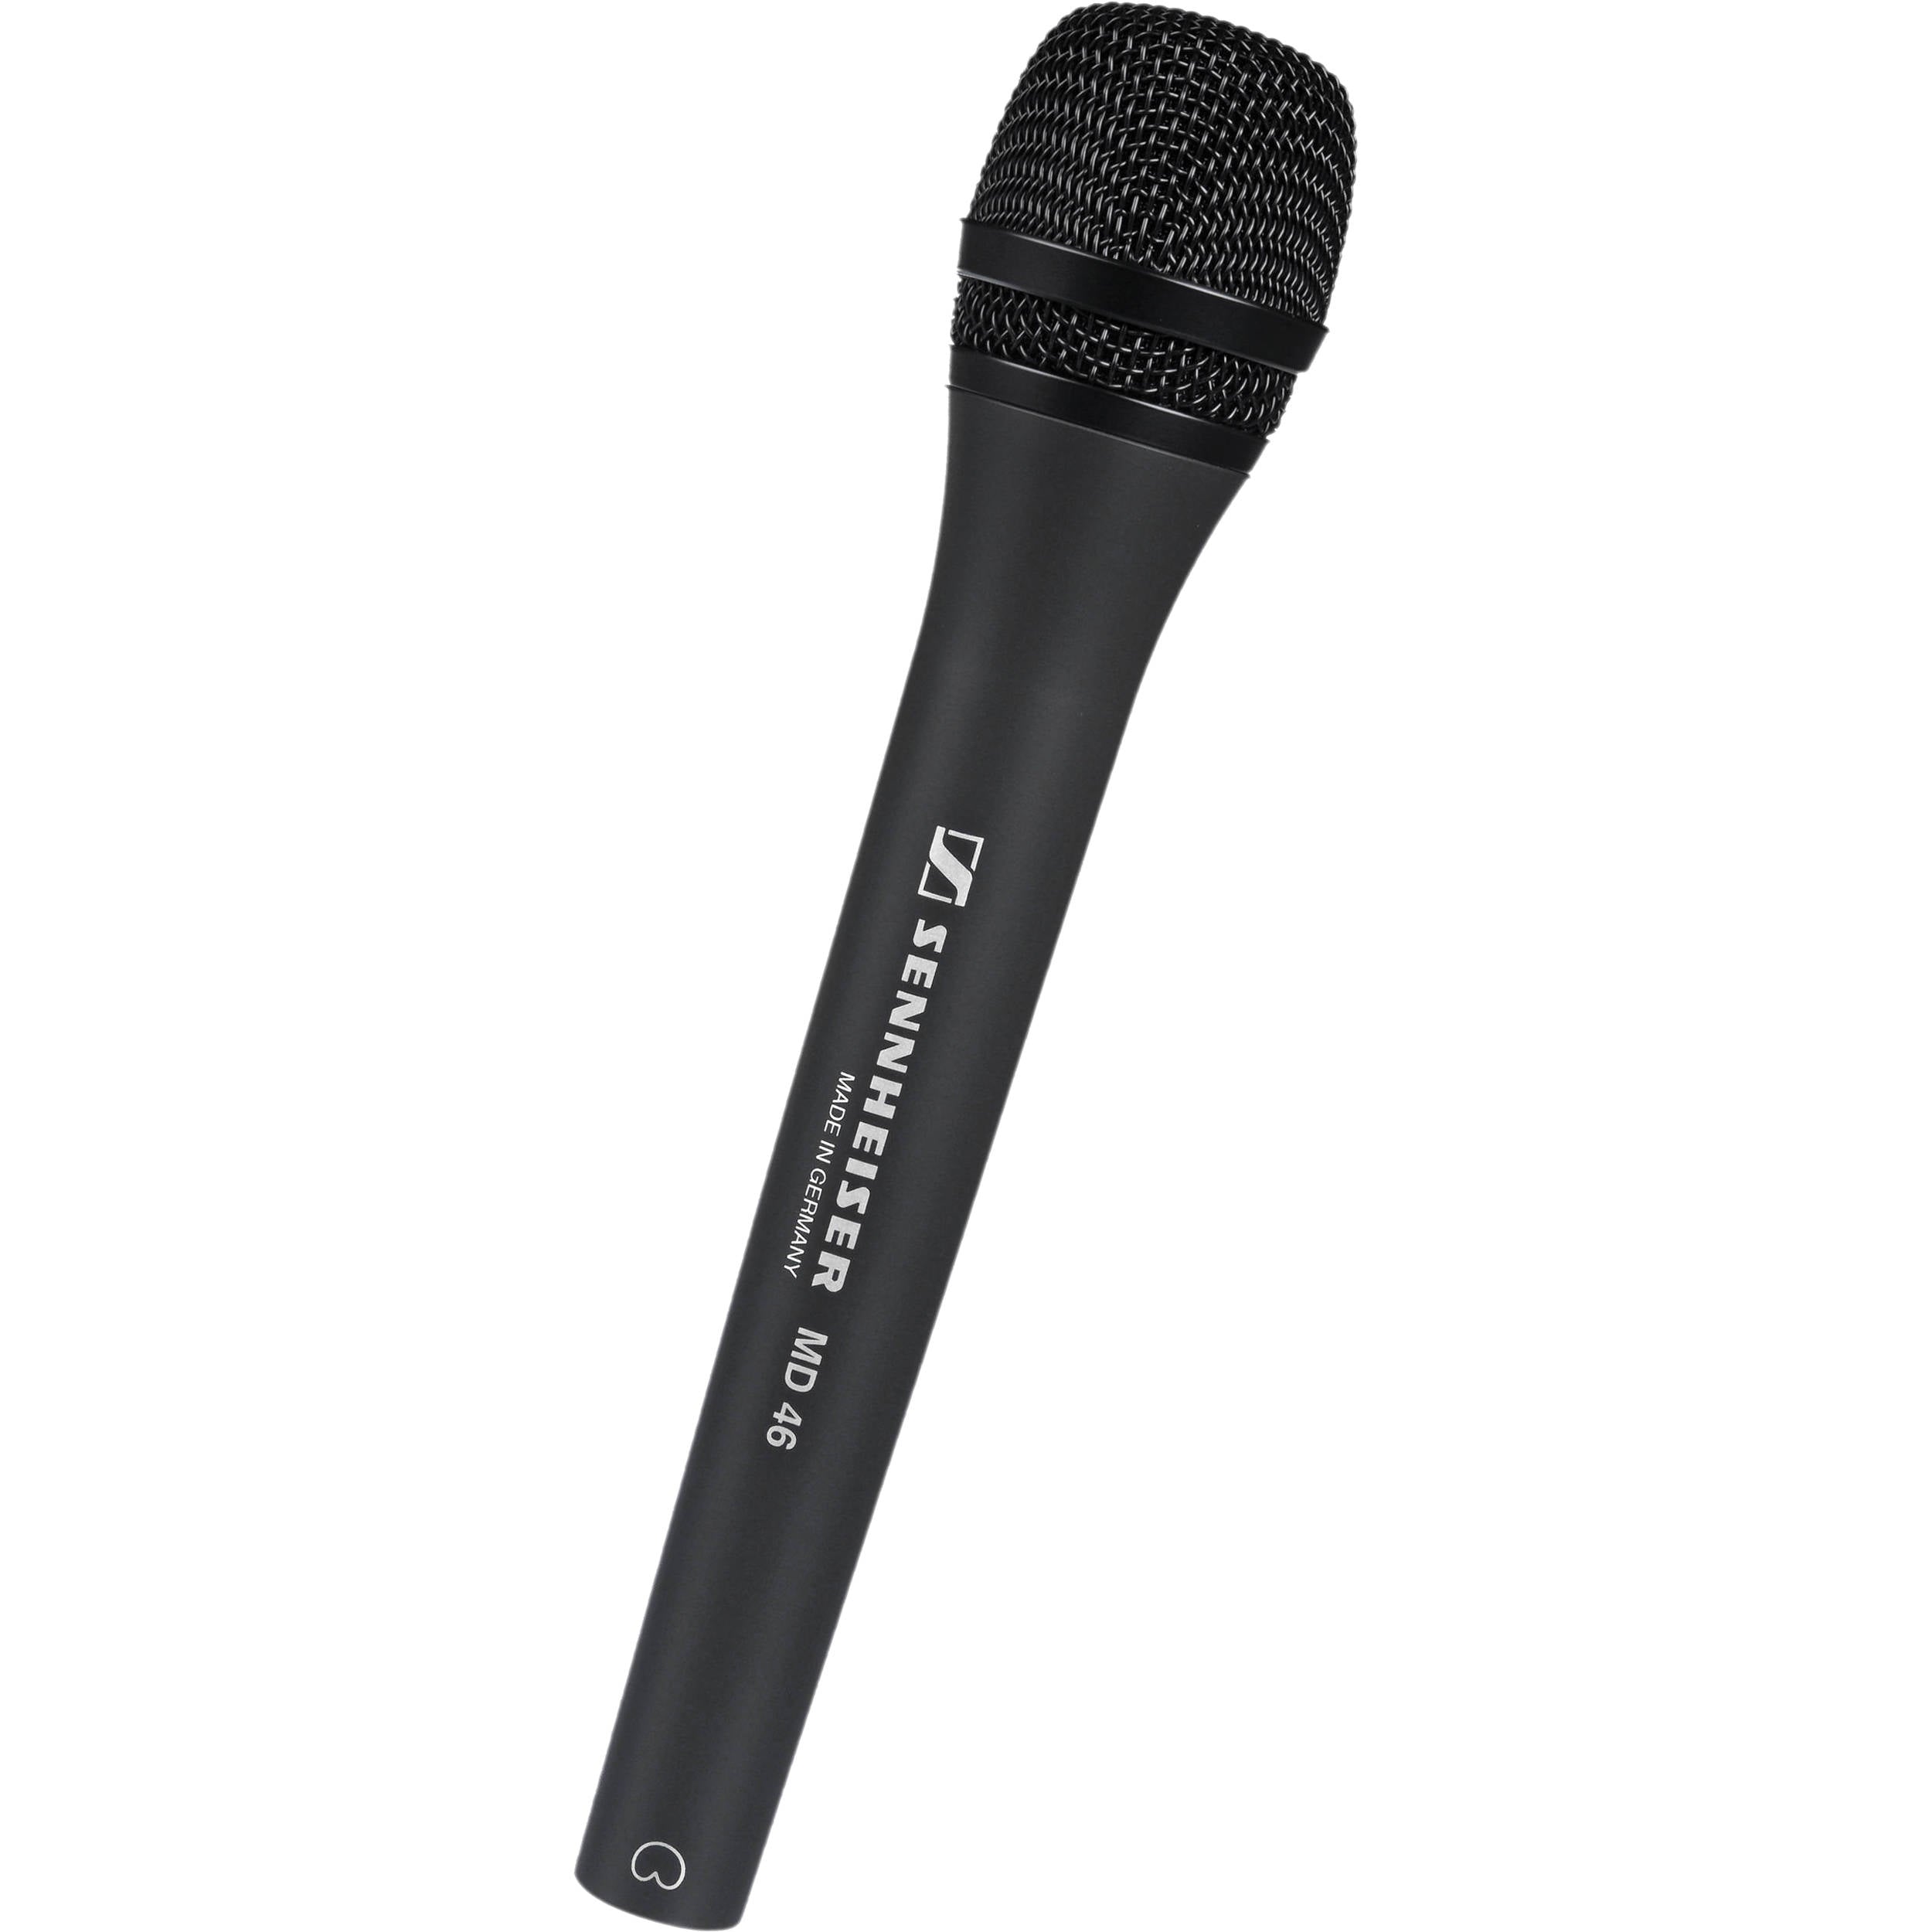 Sennheiser MD 46 Microphone dynamique pour les environnements de reporting et de diffusion en direct 005172